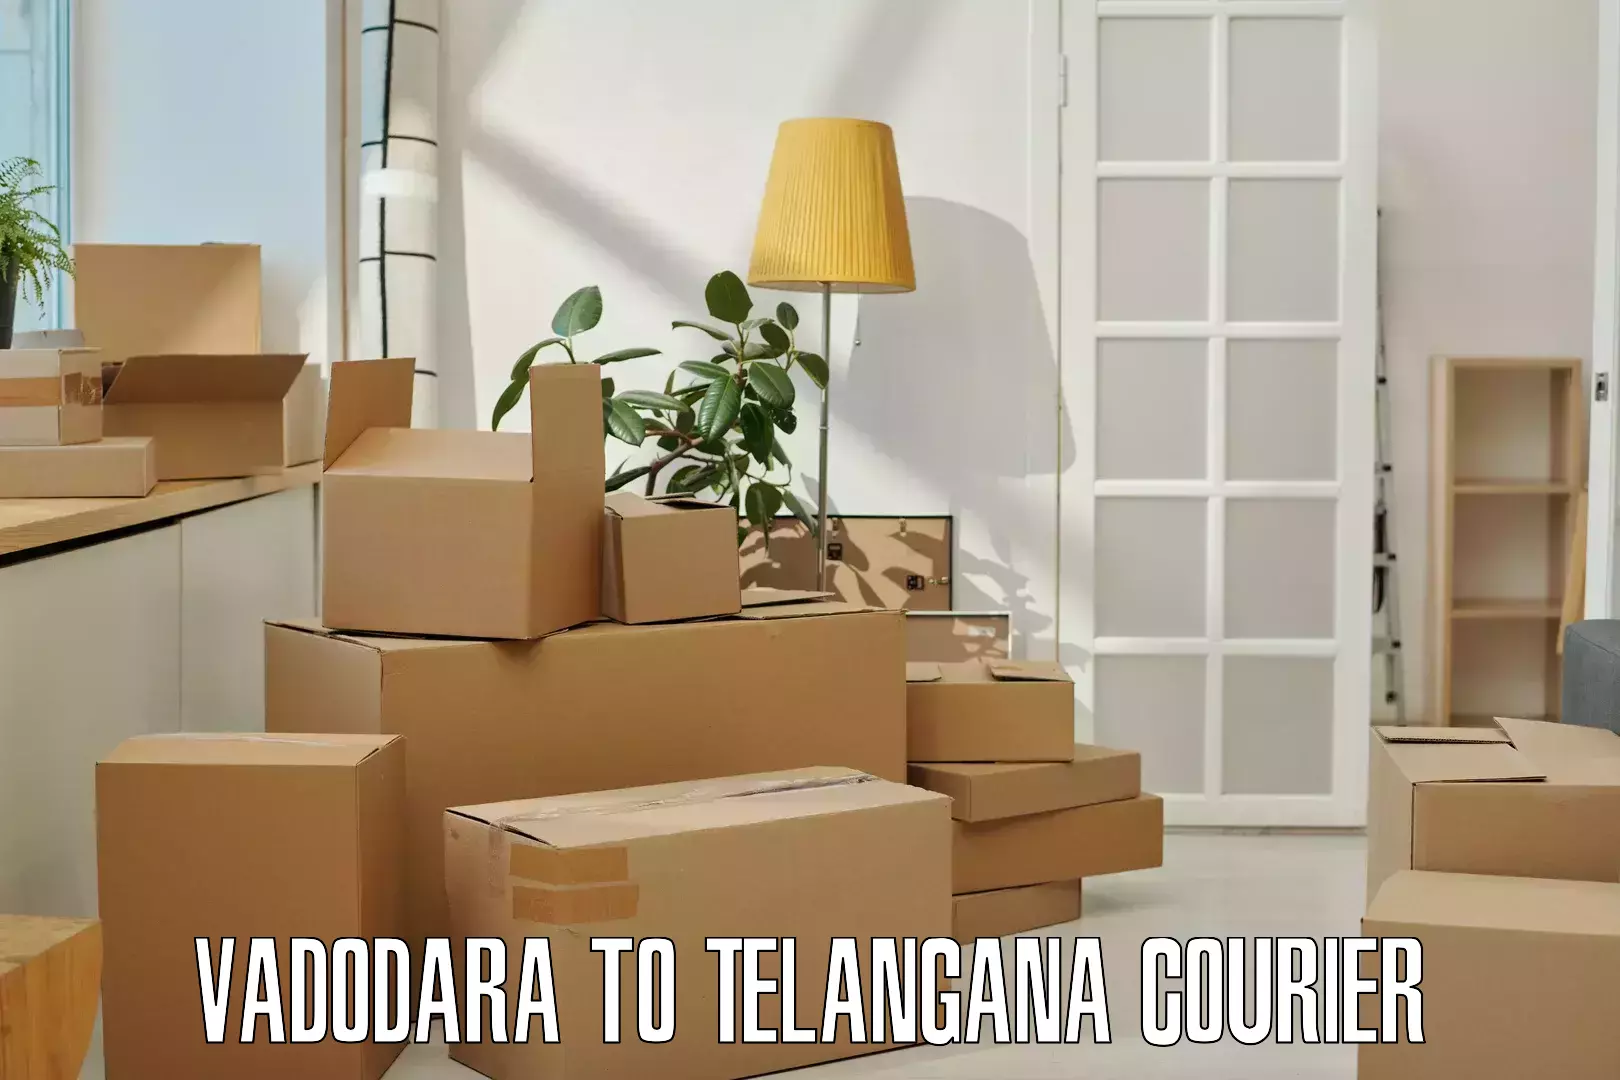 Bulk courier orders Vadodara to Telangana